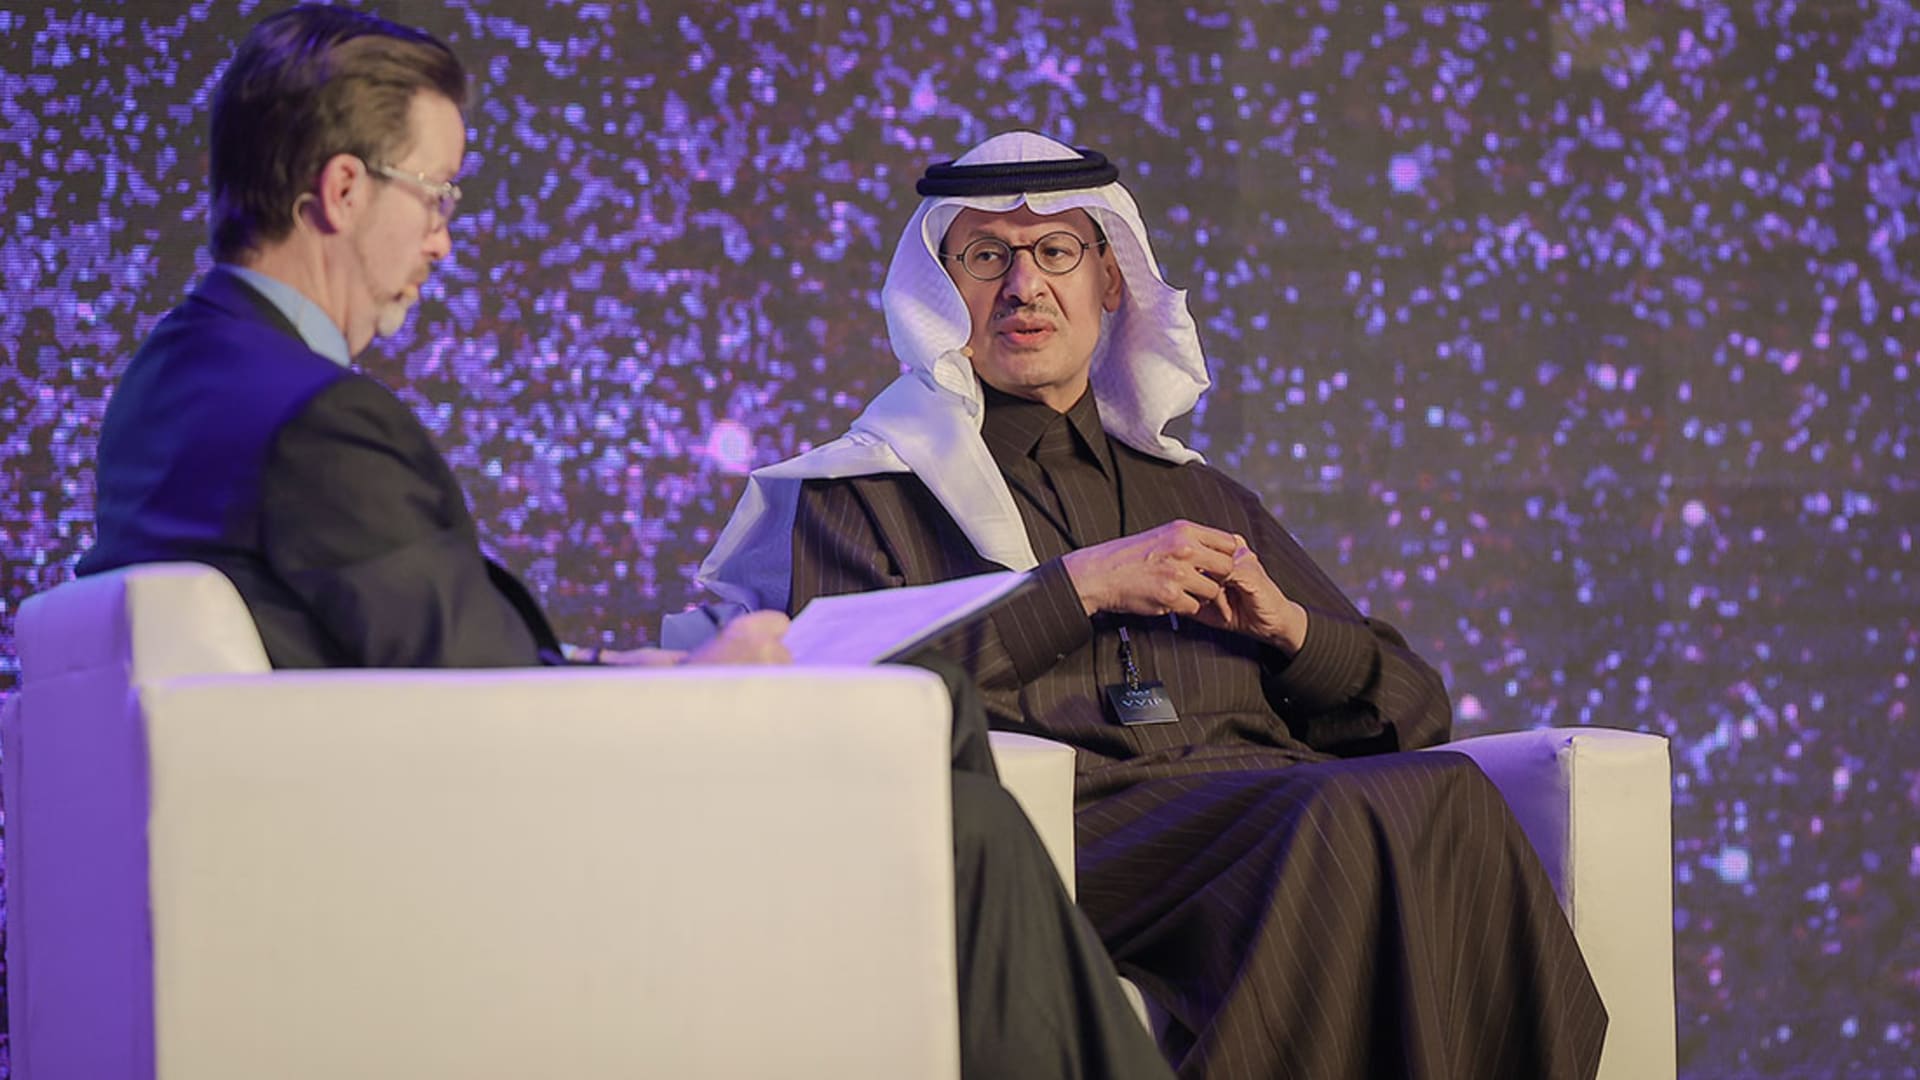 السعودية.. تفاعل على فيديو لوزير الطاقة وتصريح "كلمة مستحيل" بمؤتمر LEAP22